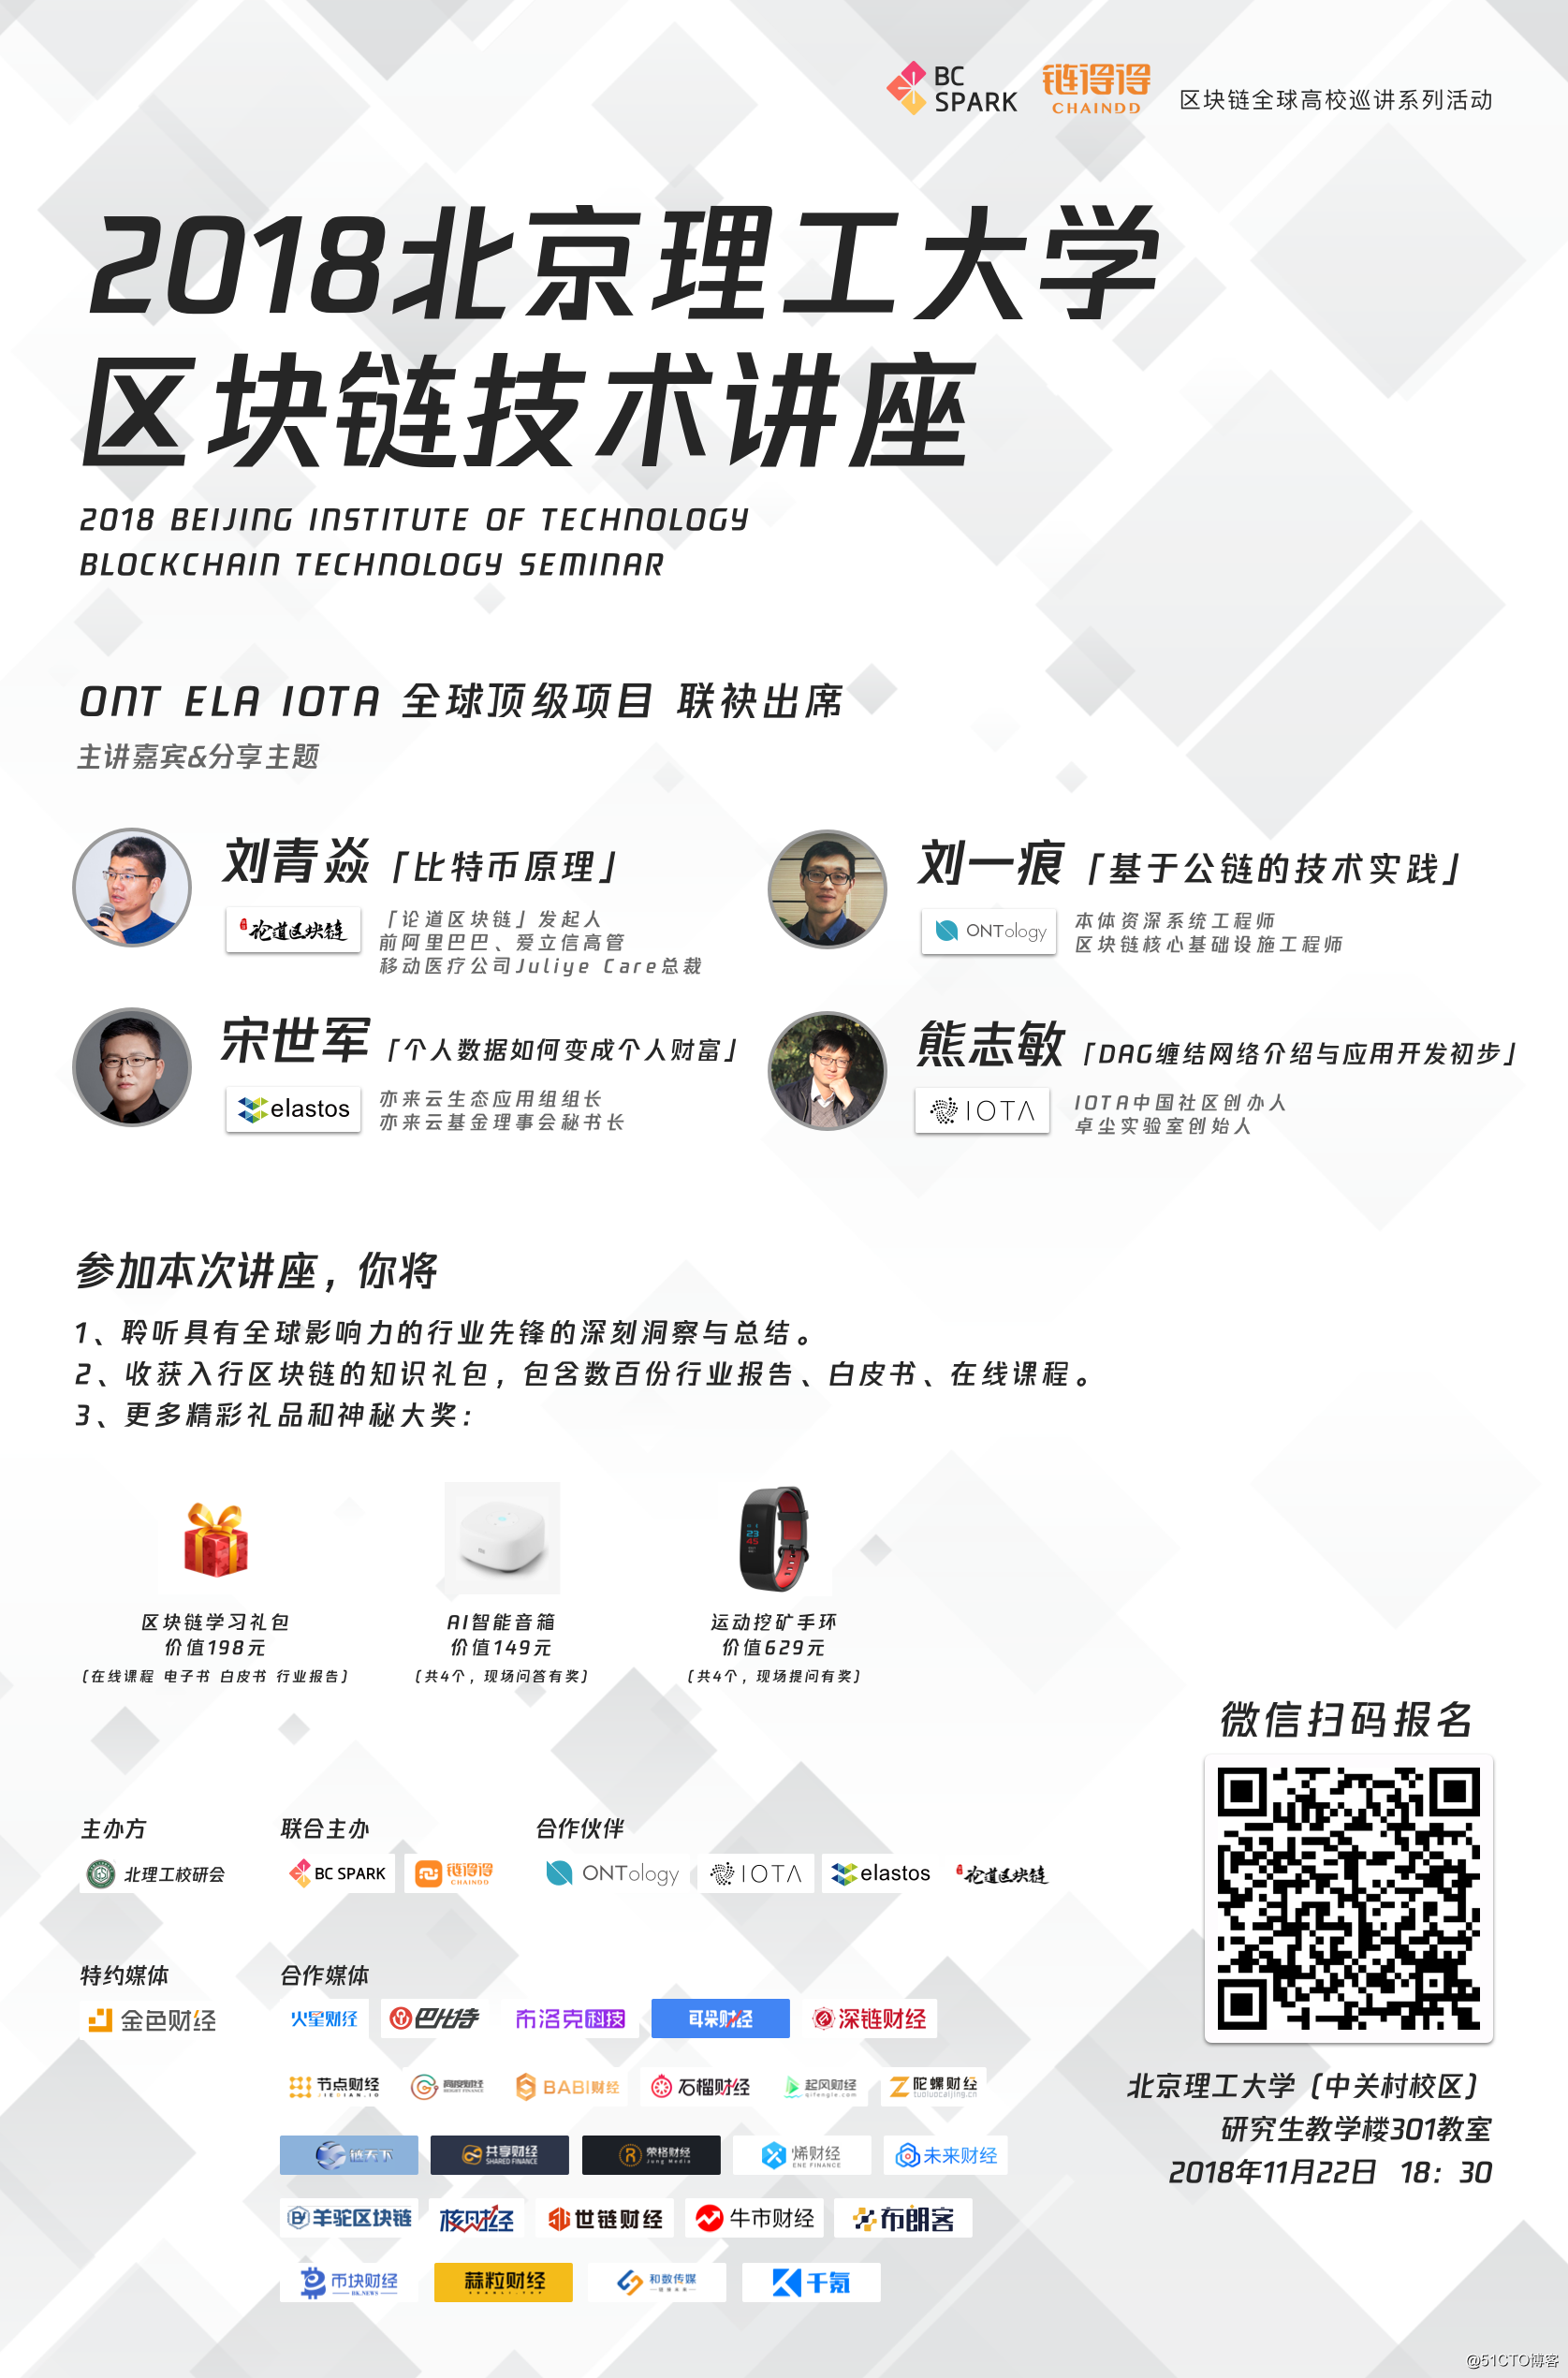 2018北京理工大学区块链技术讲座